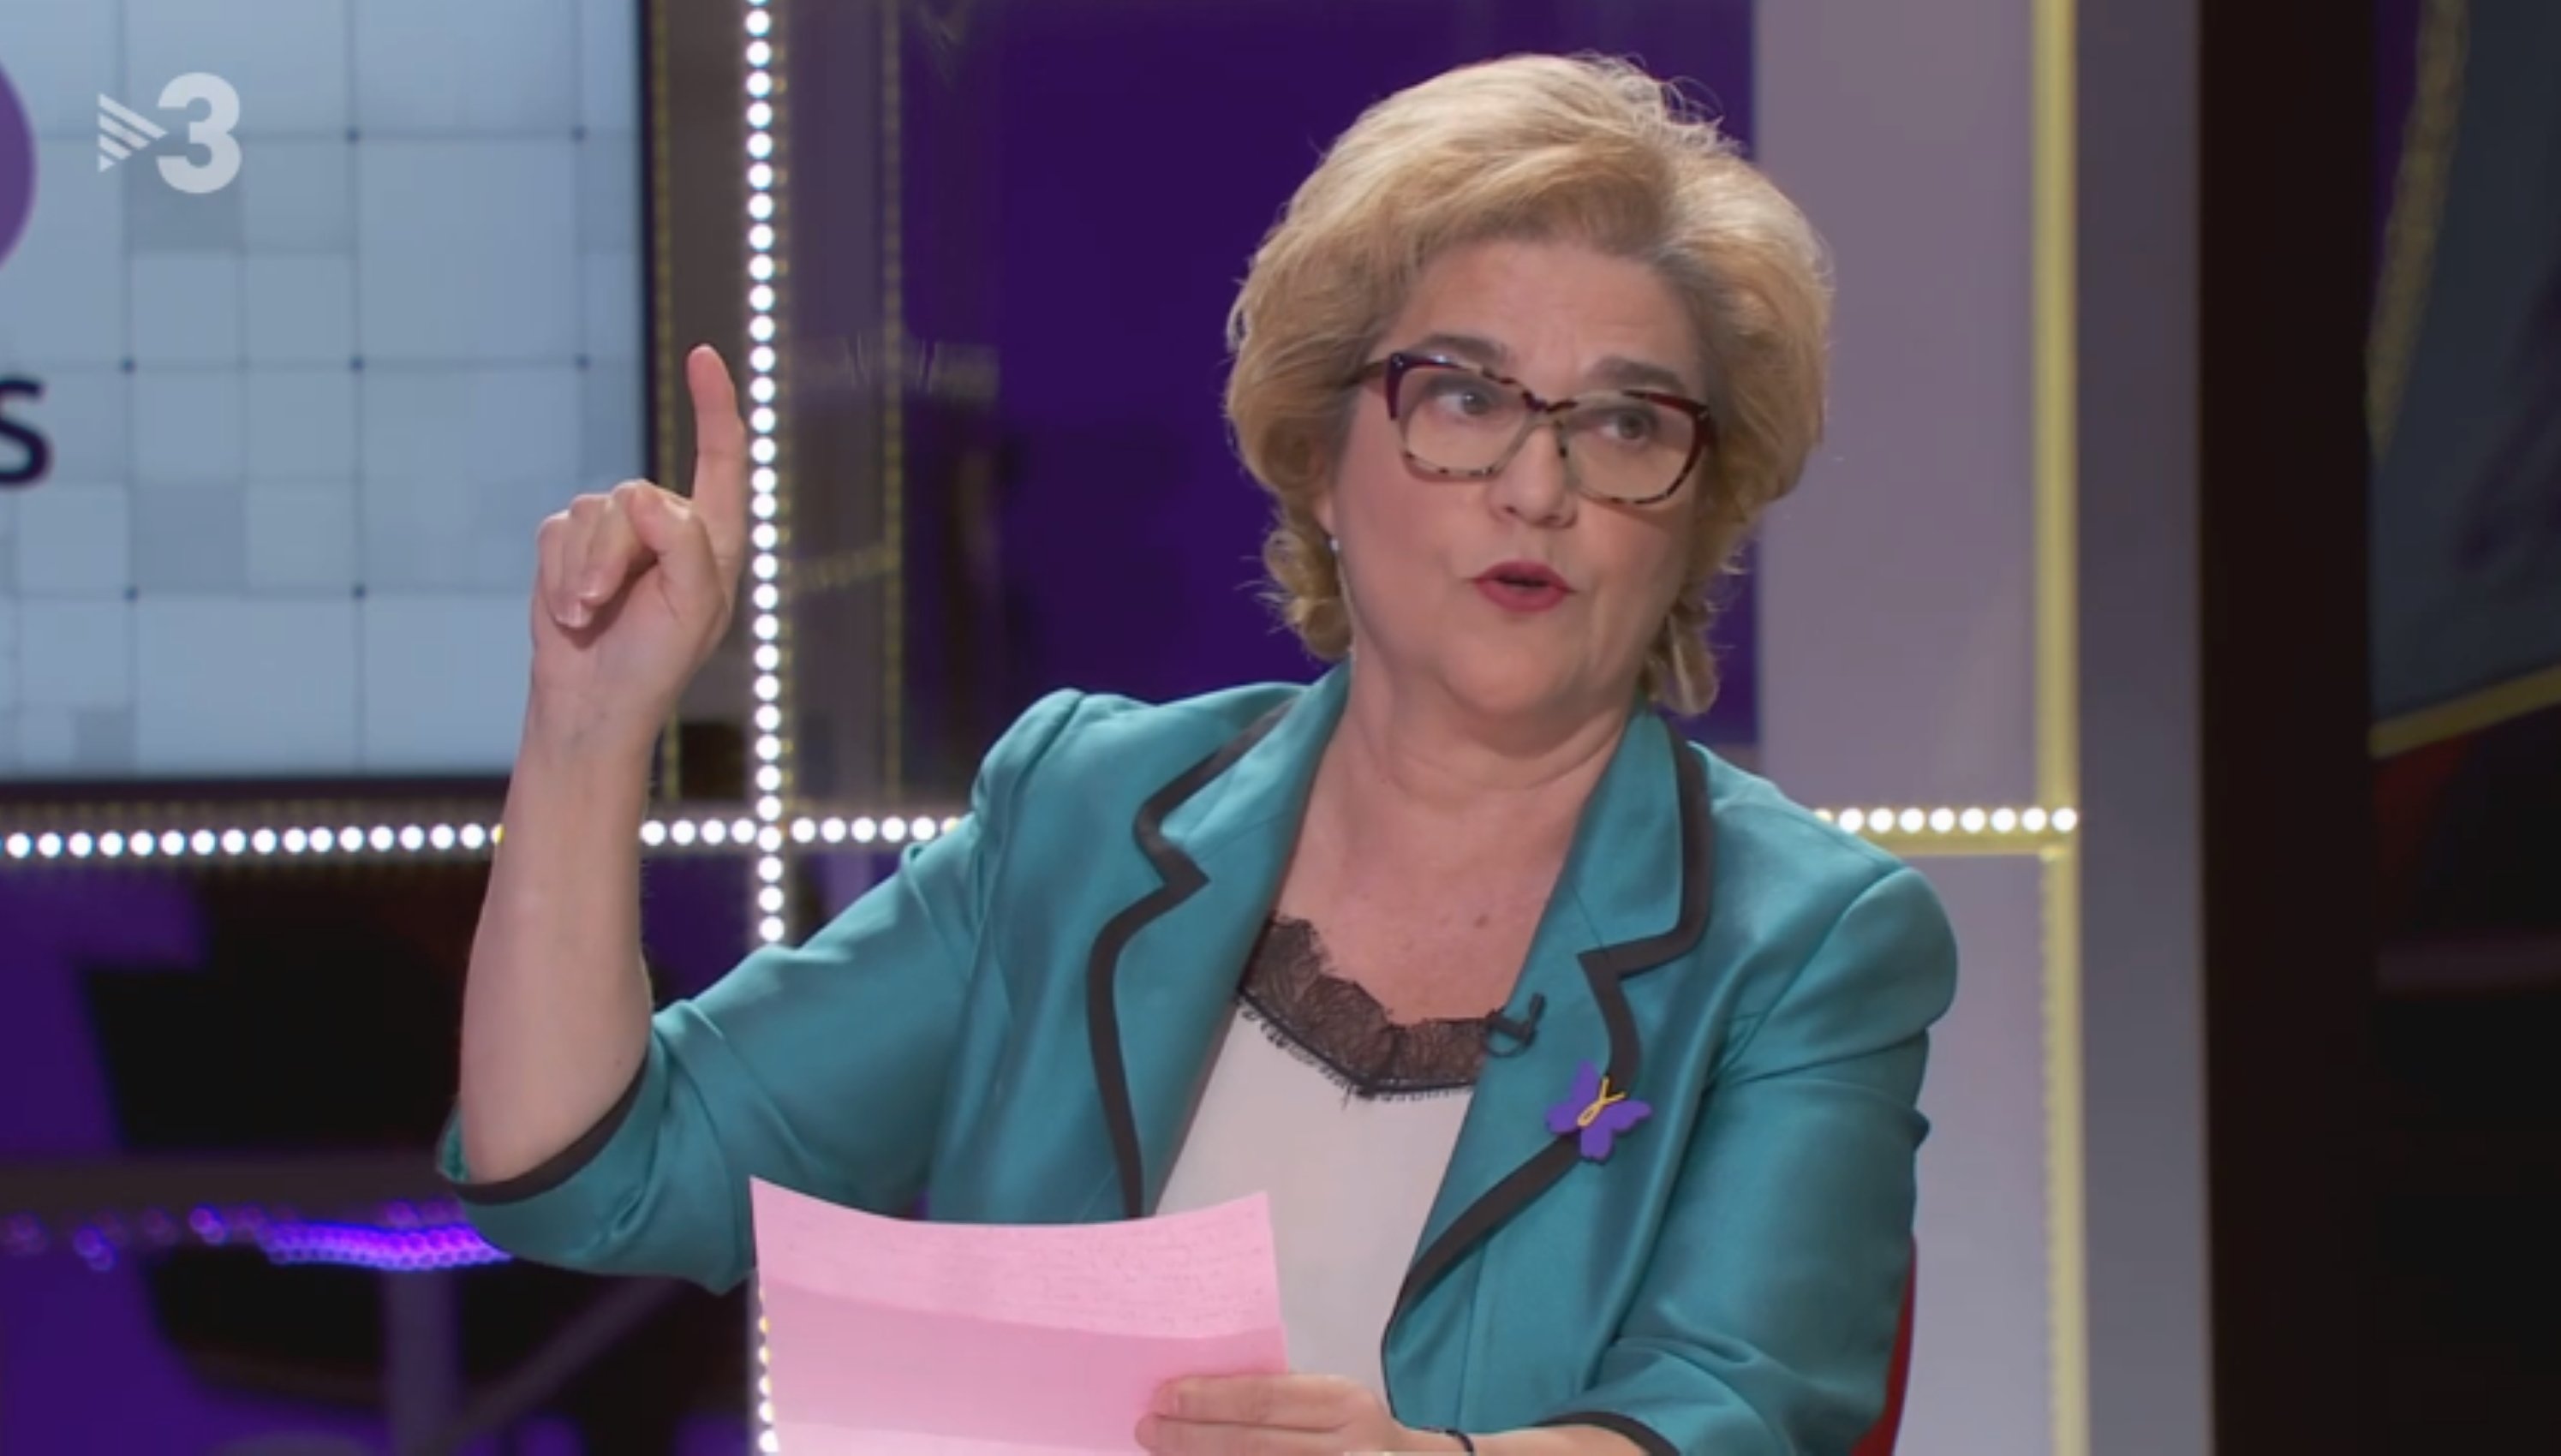 Rahola hunde (más) a Juan Carlos en TV3: expulsado, mentiroso y surrealista